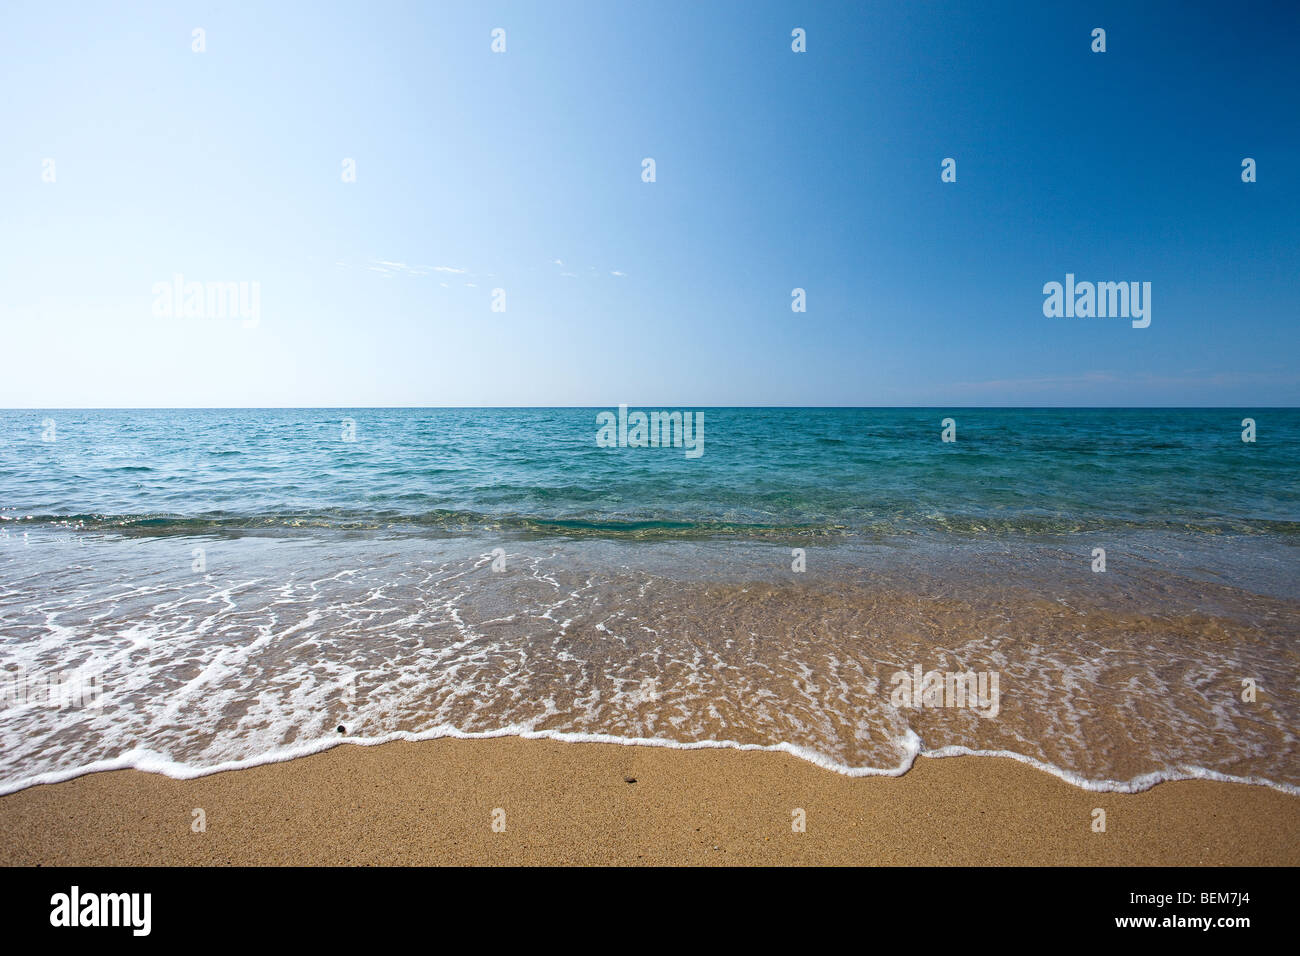 Piscinas Strand und die Sanddünen in der Nähe von Arbus, Medio Campidano-Bereich. Sardinien, Italien. Meer Hintergrund Stockfoto